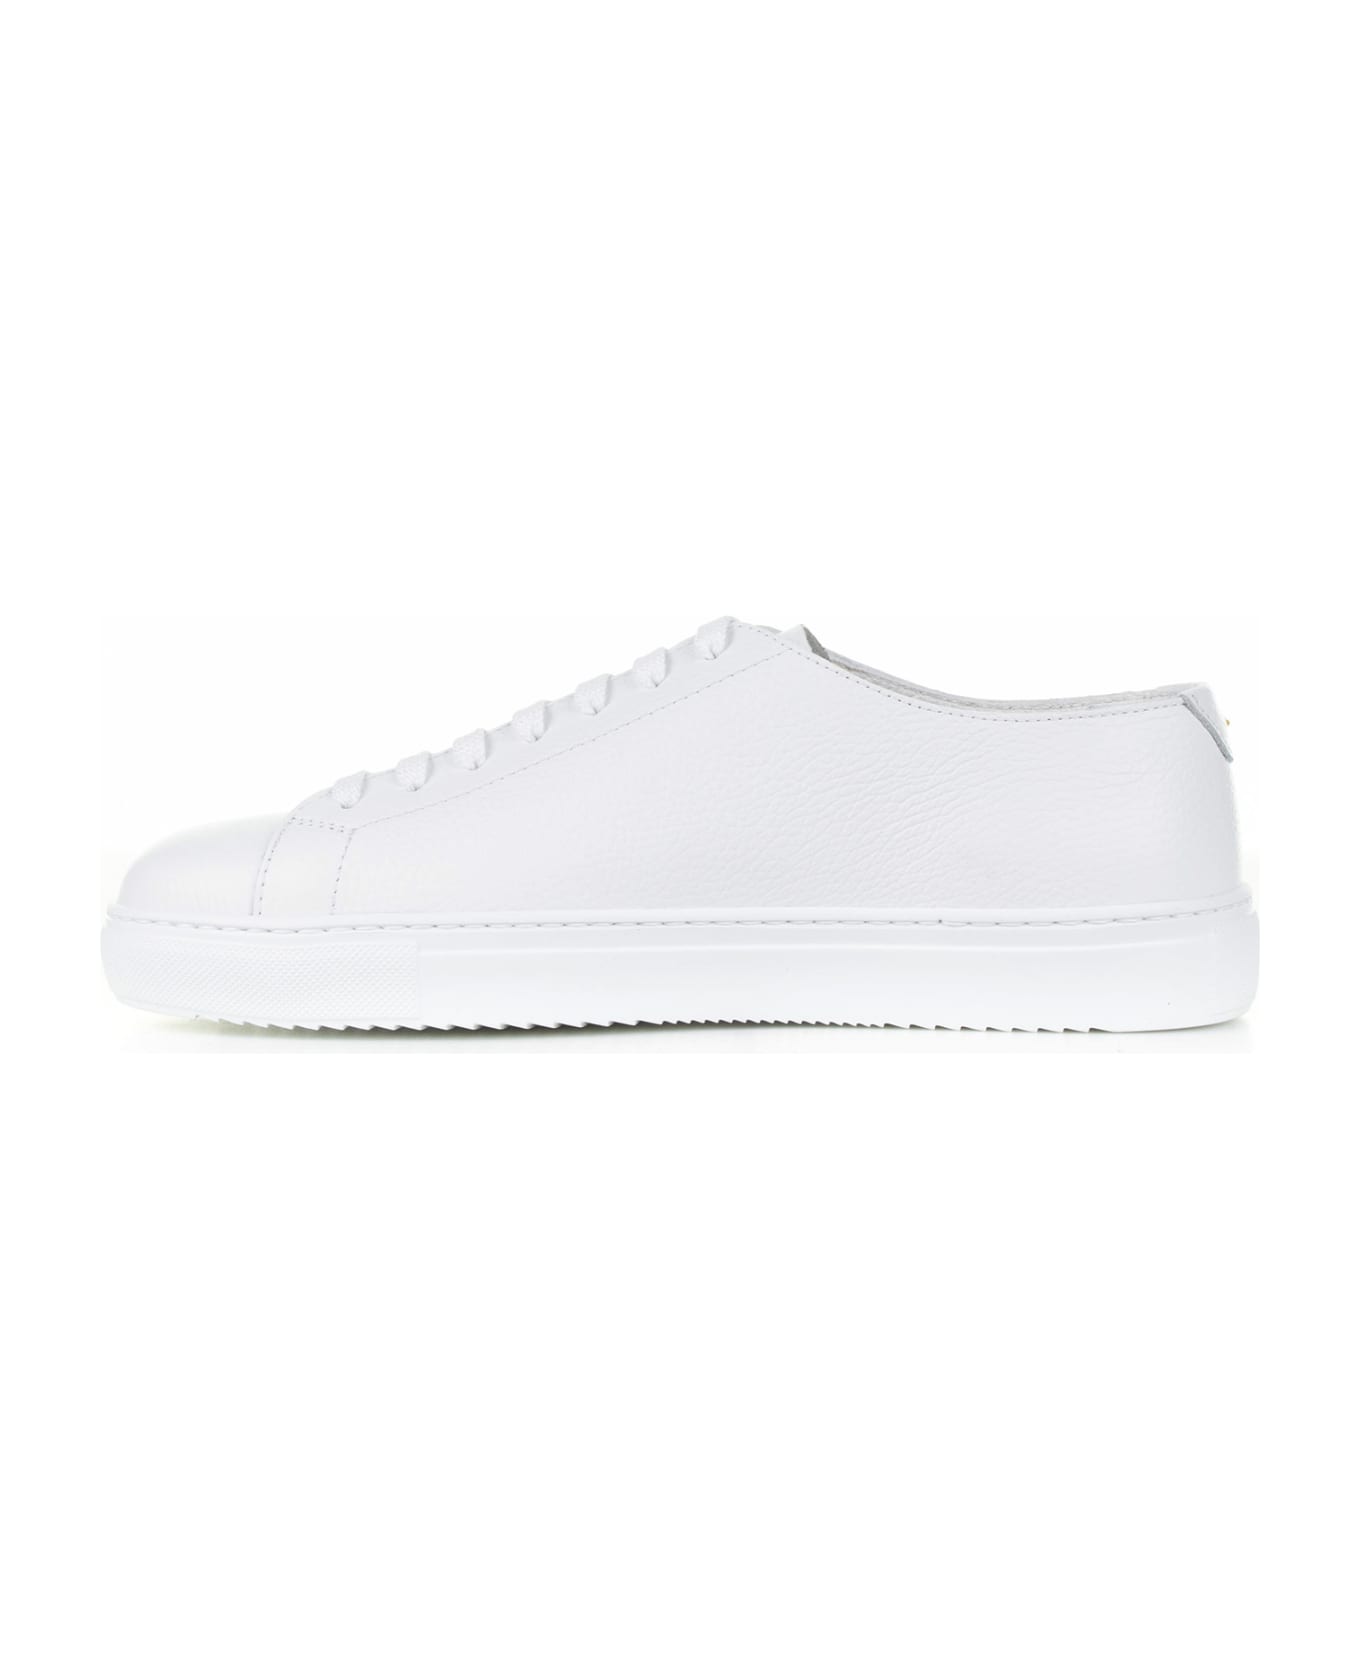 Barrett White Woven Leather Sneaker - BIANCO スニーカー